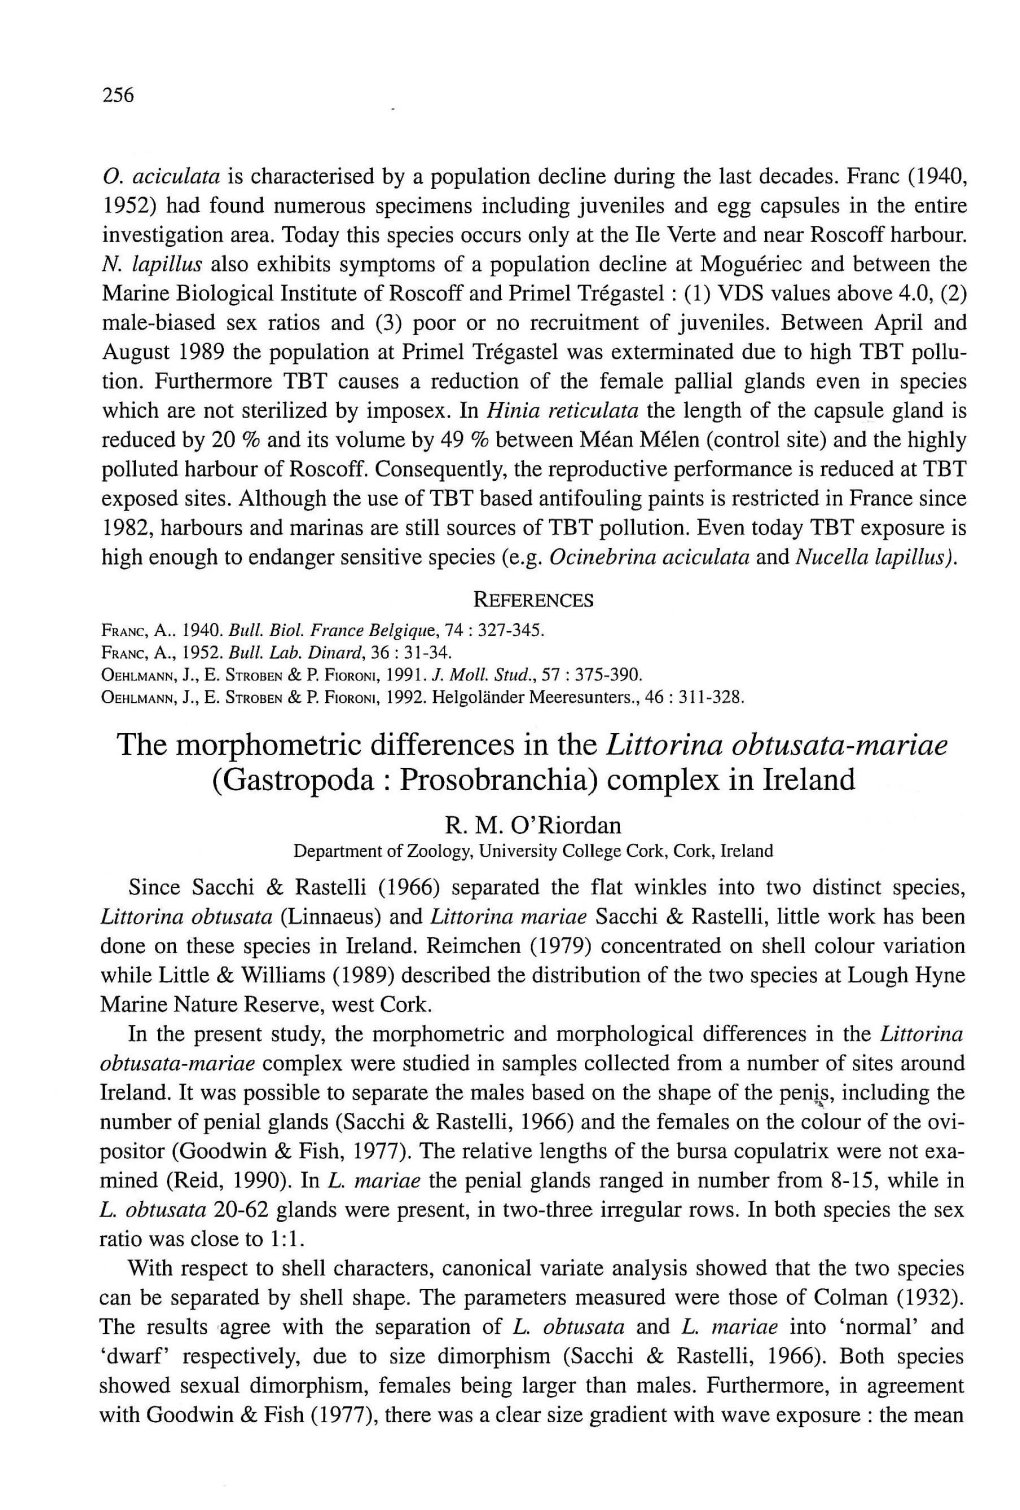 The Morphometric Differences in the Littorina Obtusata-Mariae (Gastropoda: Prosobranchia) Complex in Lreland R